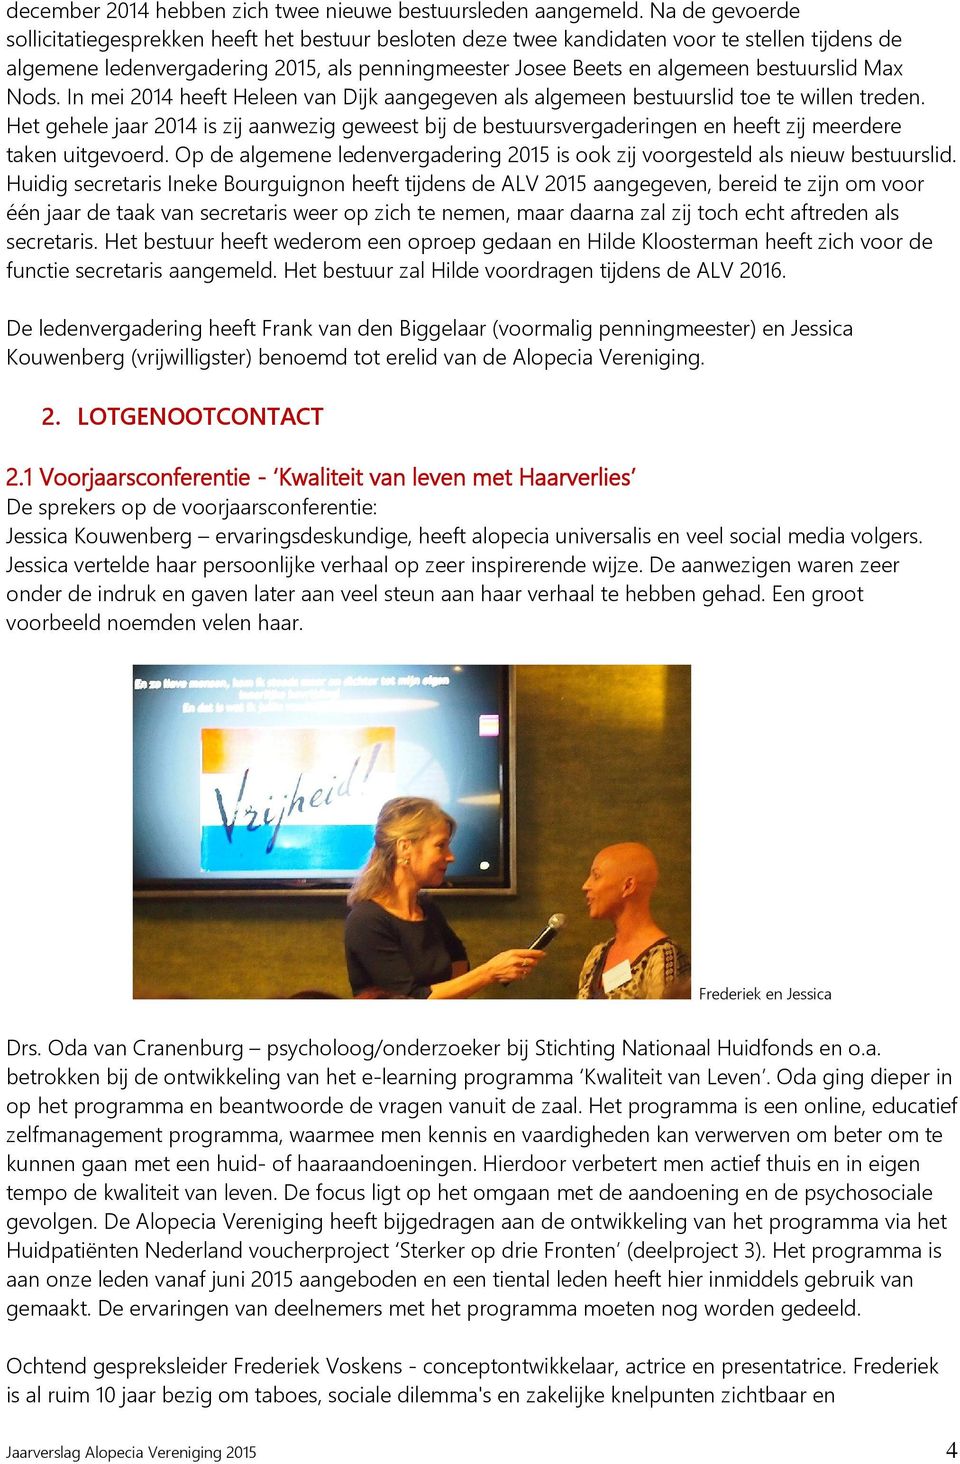 Max Nods. In mei 2014 heeft Heleen van Dijk aangegeven als algemeen bestuurslid toe te willen treden.